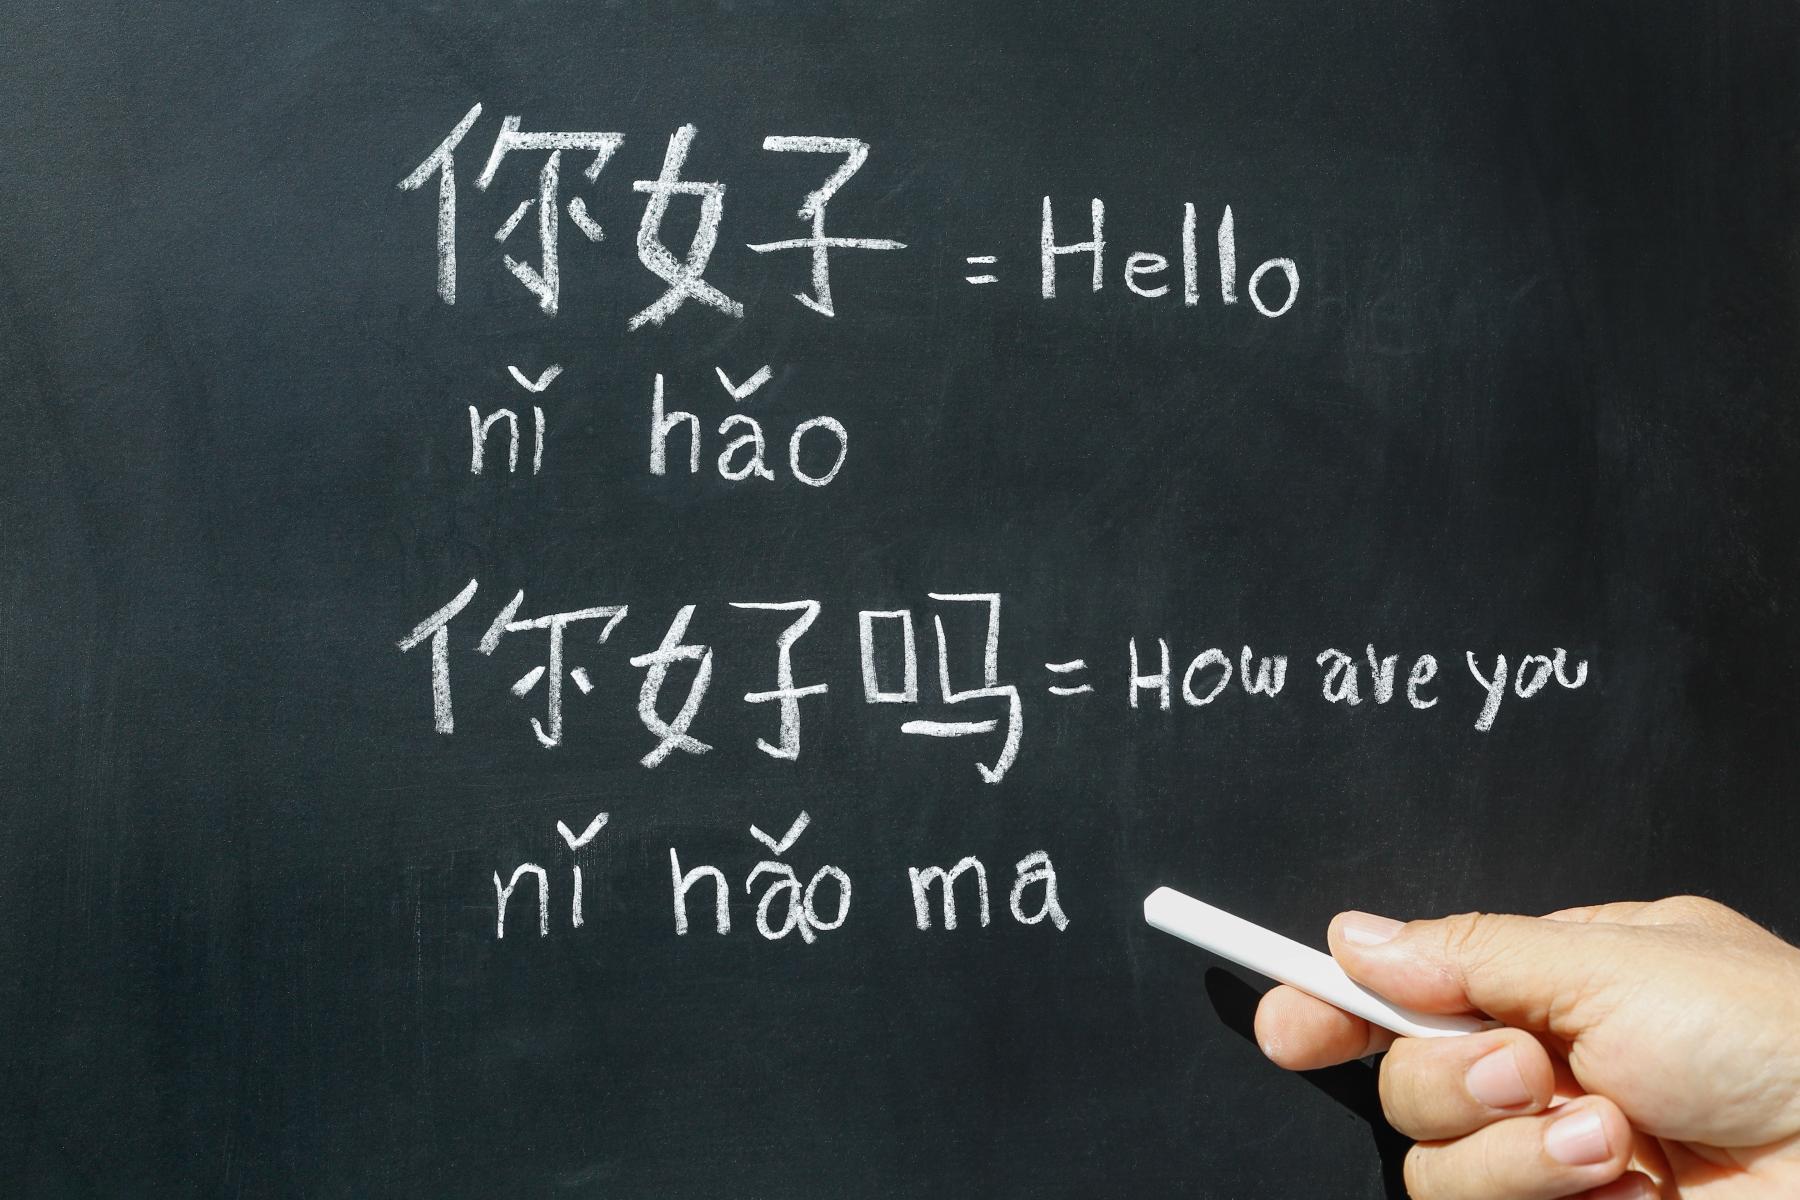 привет и как дела на китайском языке 